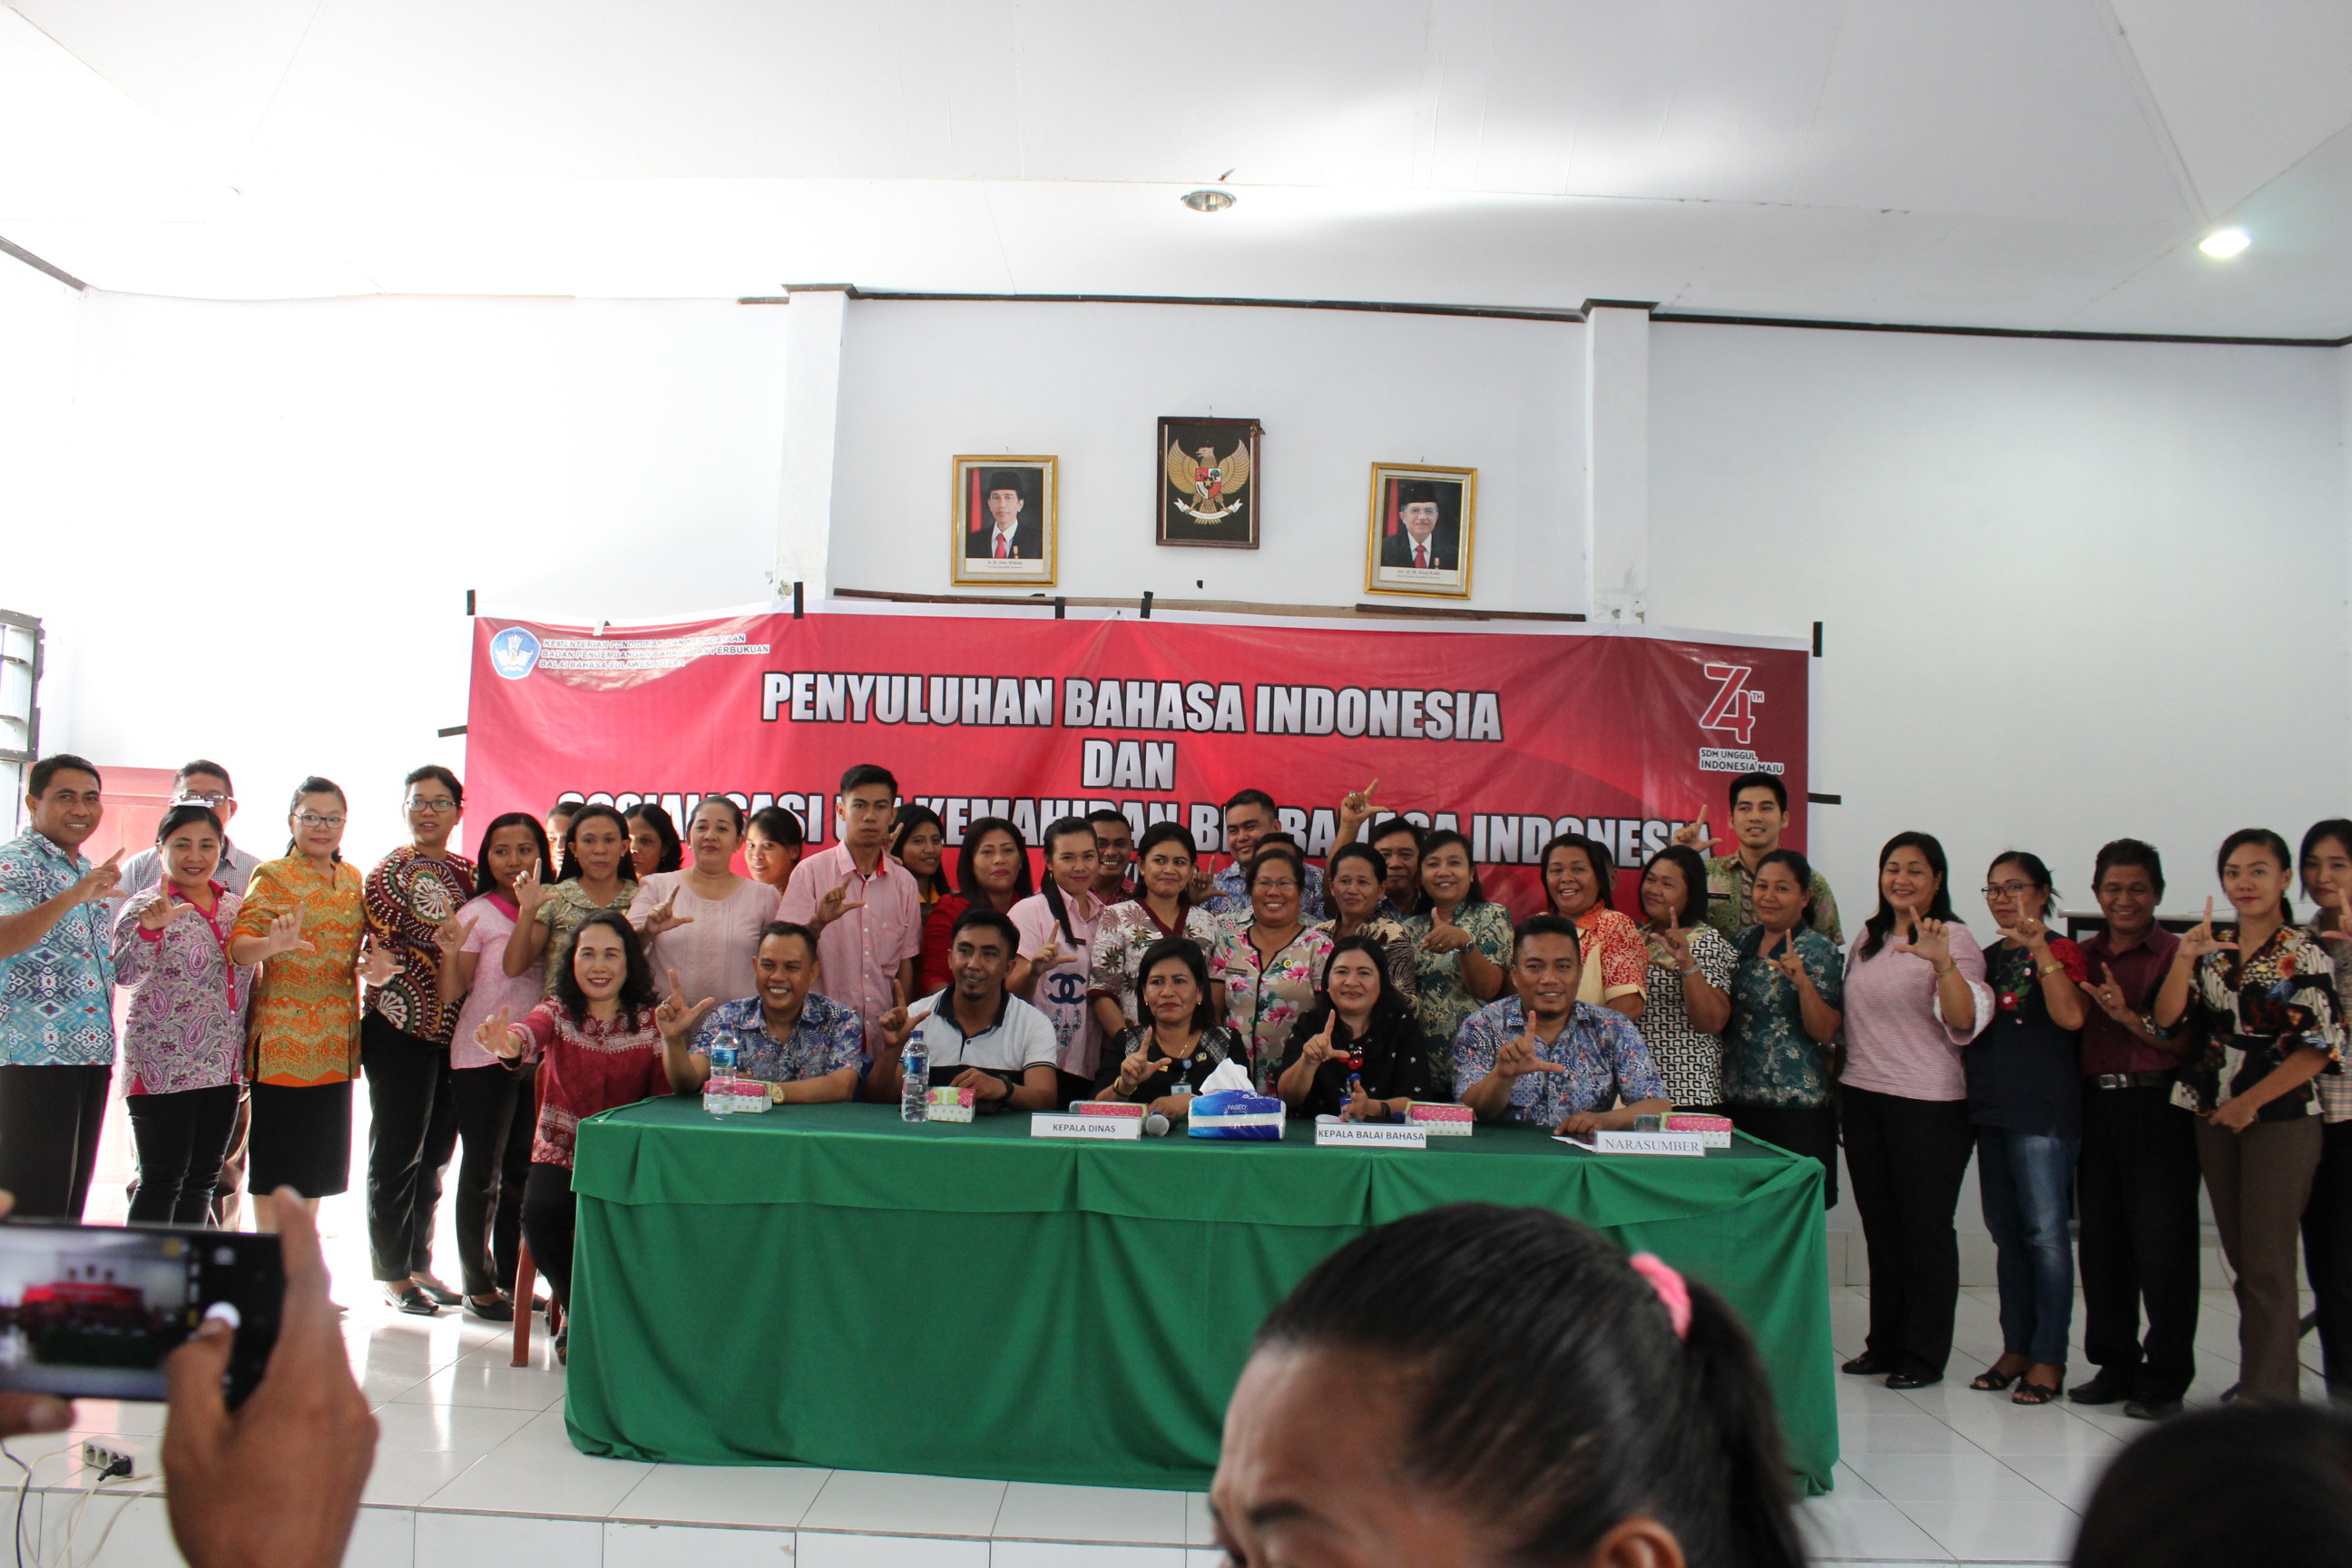 Penyuluhan Bahasa Indonesia dan Sosialisasi Uji Kemahiran Berbahsa Indonesia di Talaud